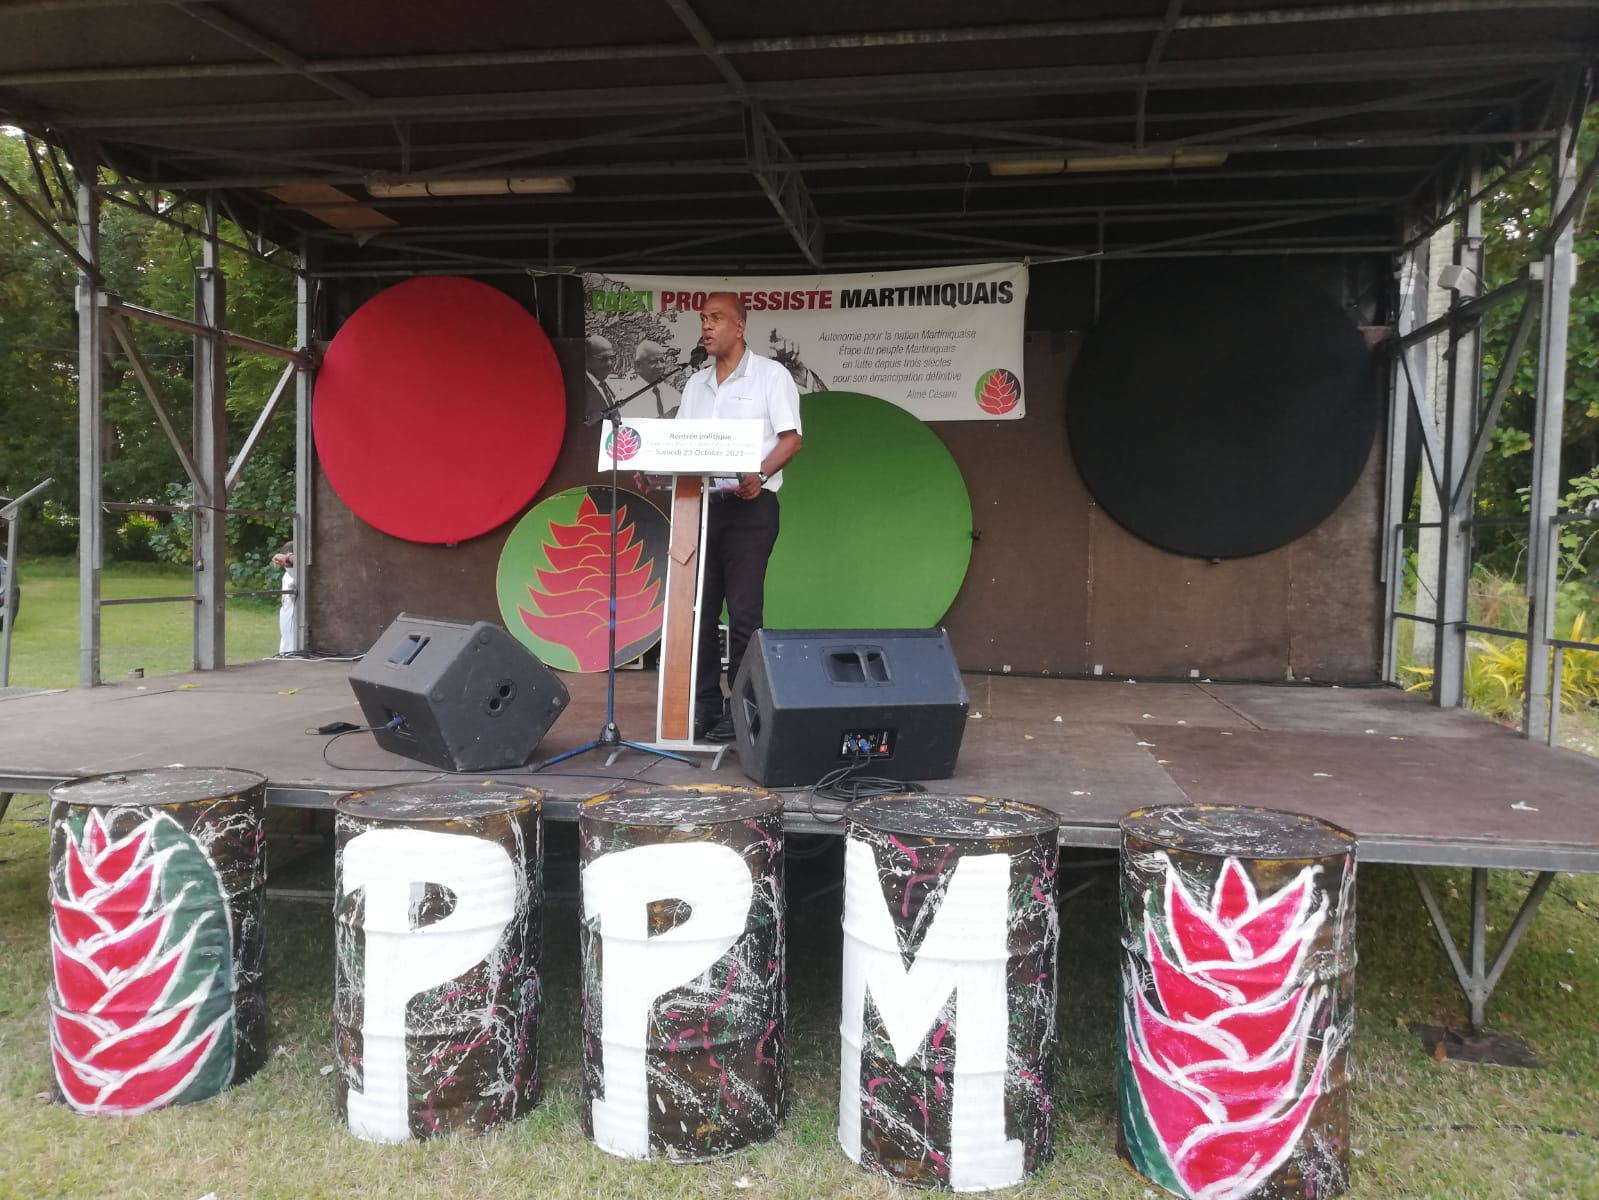     Rentrée du PPM : Serge Letchimy annonce le lancement du chantier Séguineau

